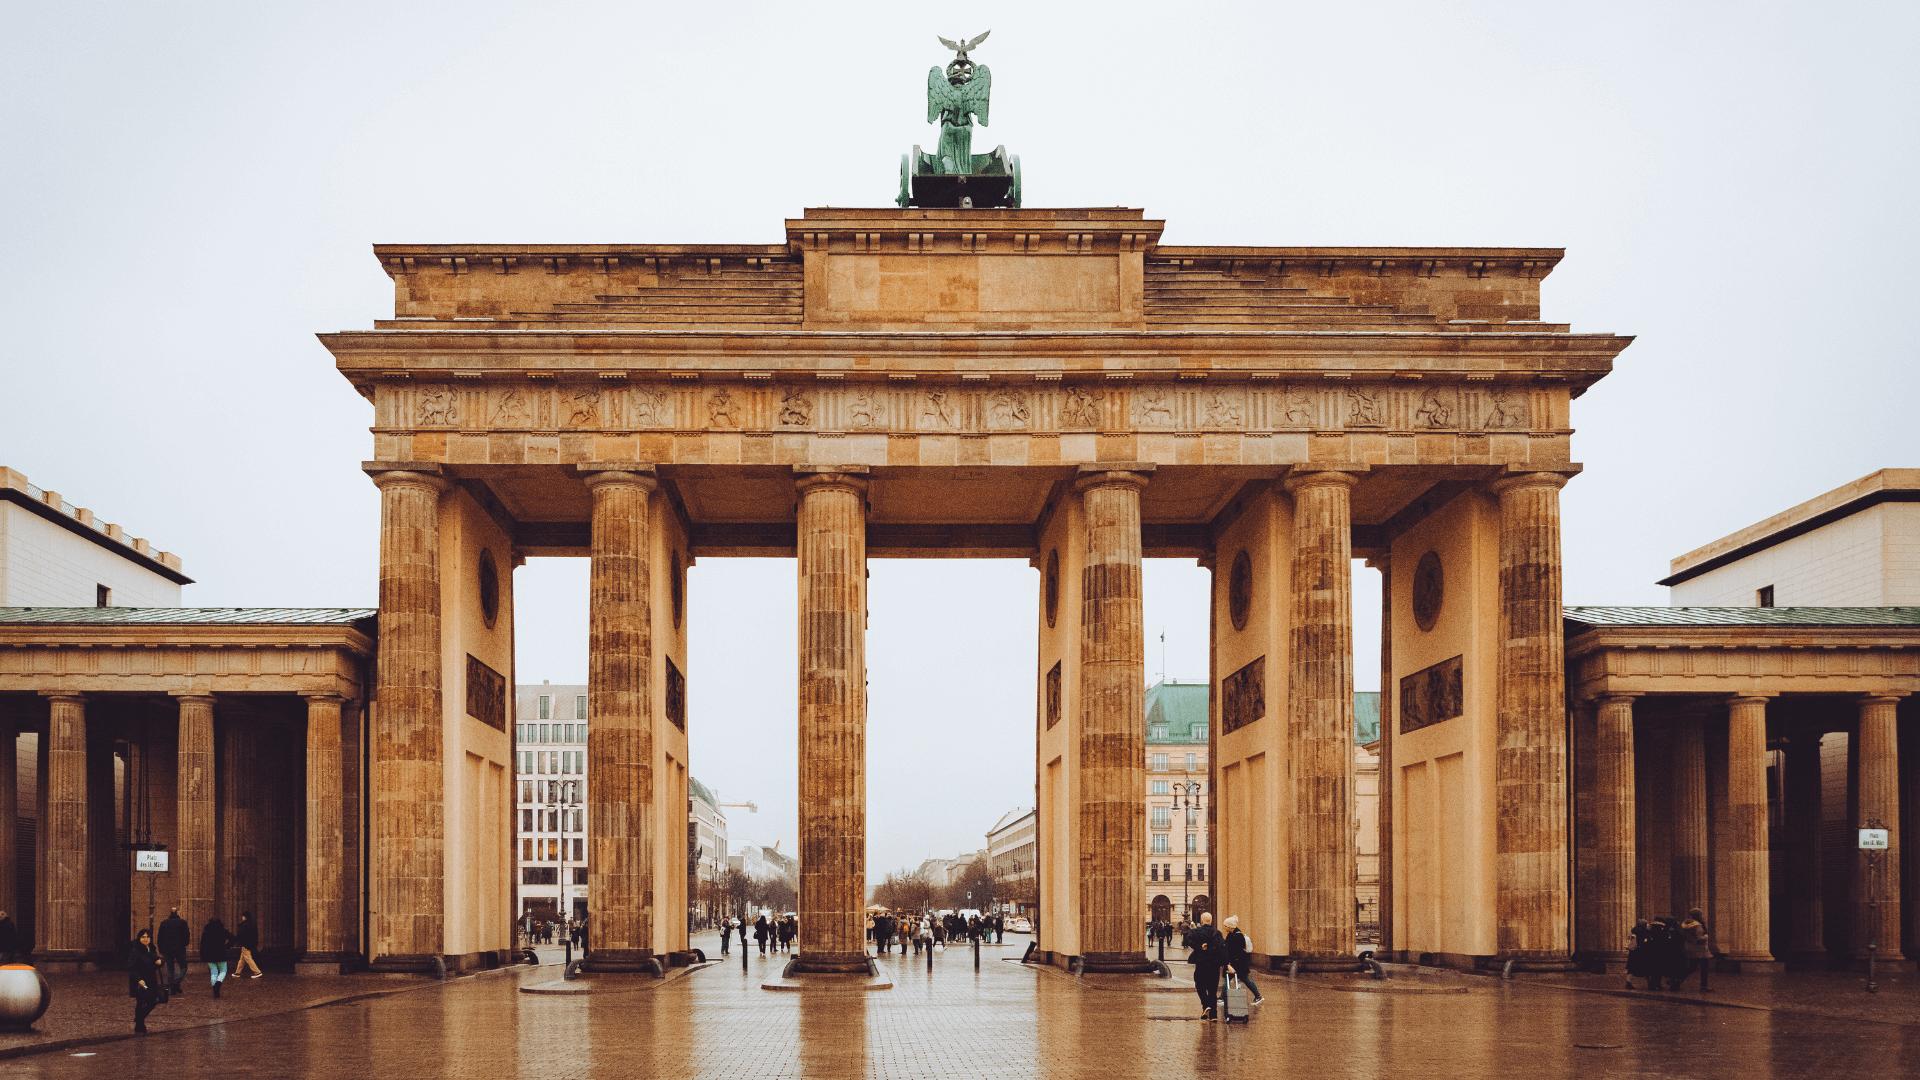 DESTACADA visitando la ciudad de Berlin 2 - RECORRIENDO LA HISTÓRICA CIUDAD DE BERLÍN